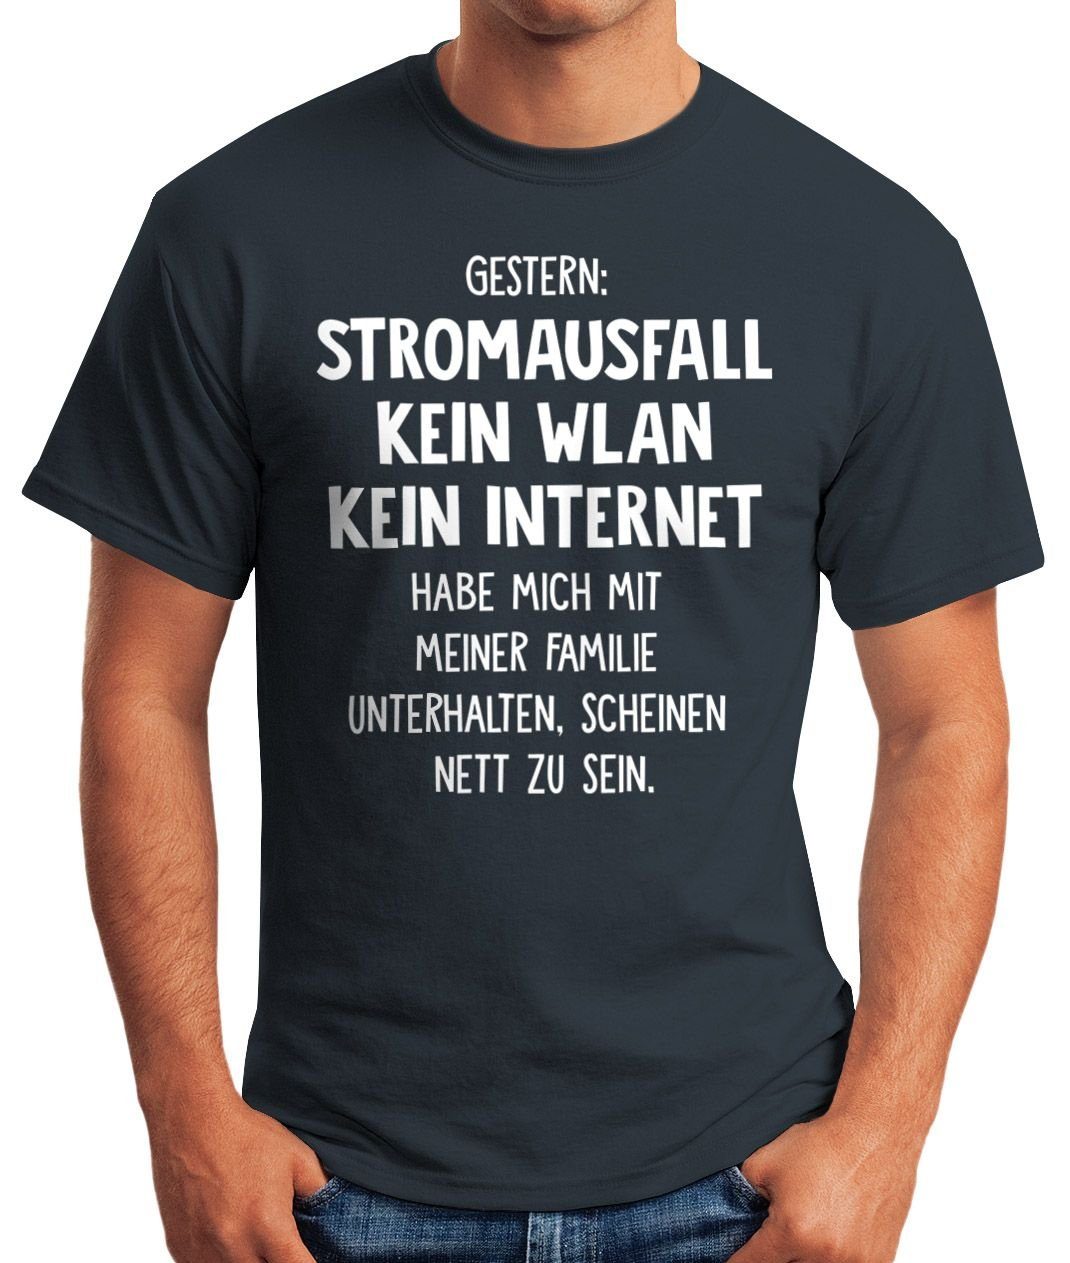 Gestern: Kein Herren Moonworks® MoonWorks WLAN Kein Print T-Shirt Stromausfall Internet mit Spruch-Shirt Print-Shirt navy